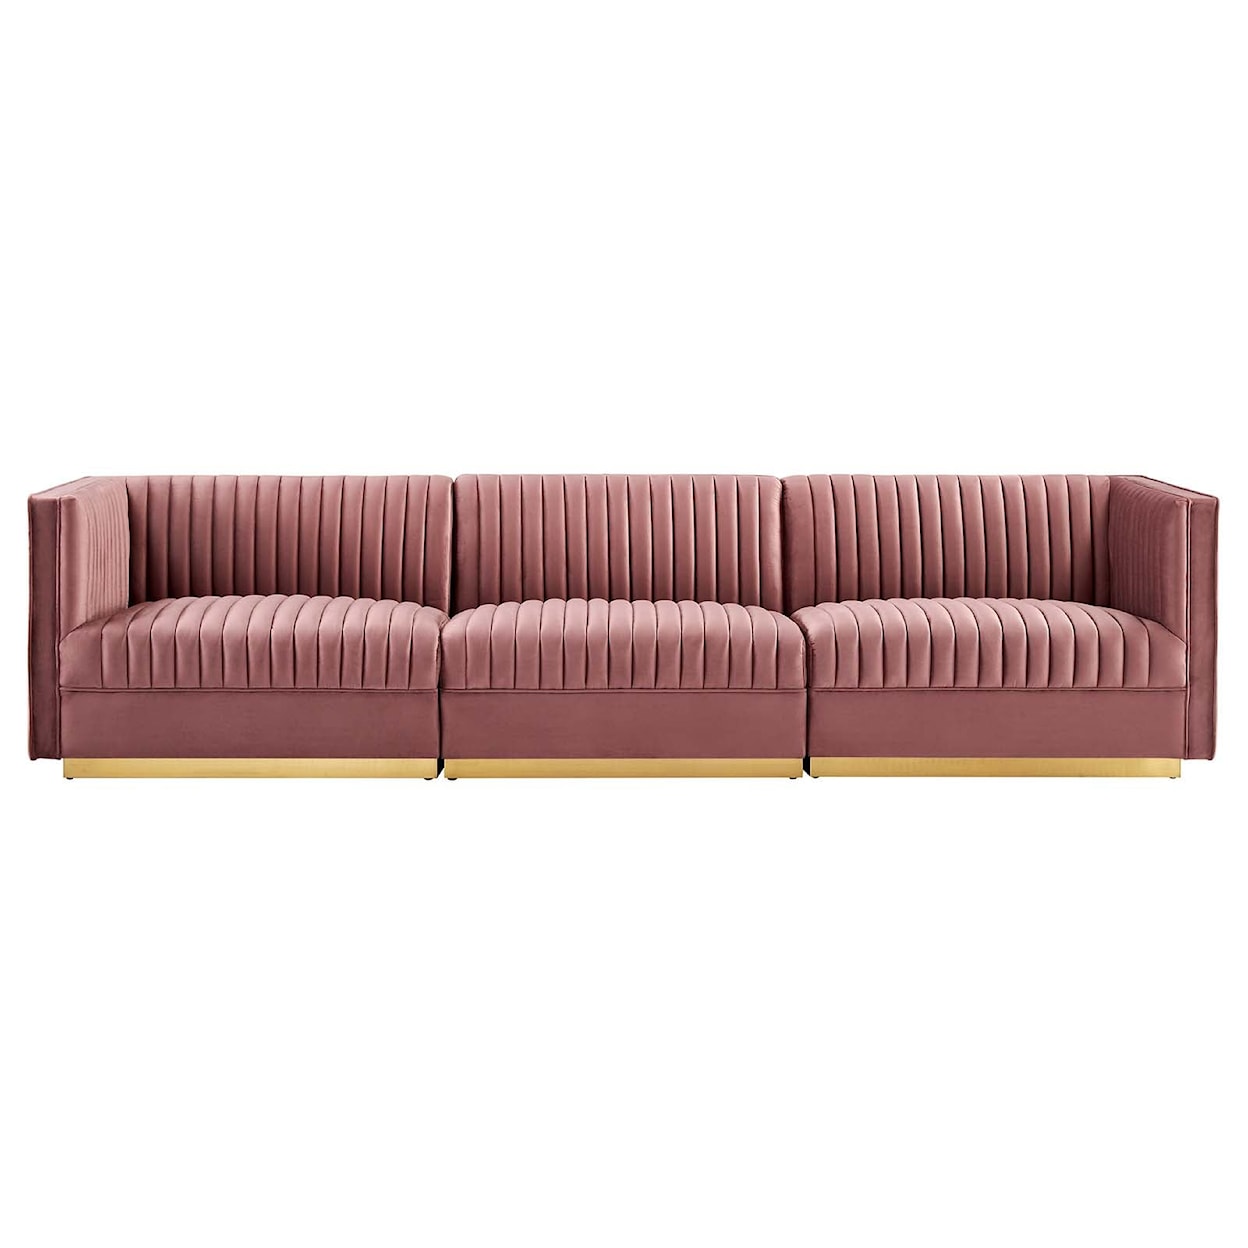 Modway Sanguine 3-Seat Modular Sectional Sofa